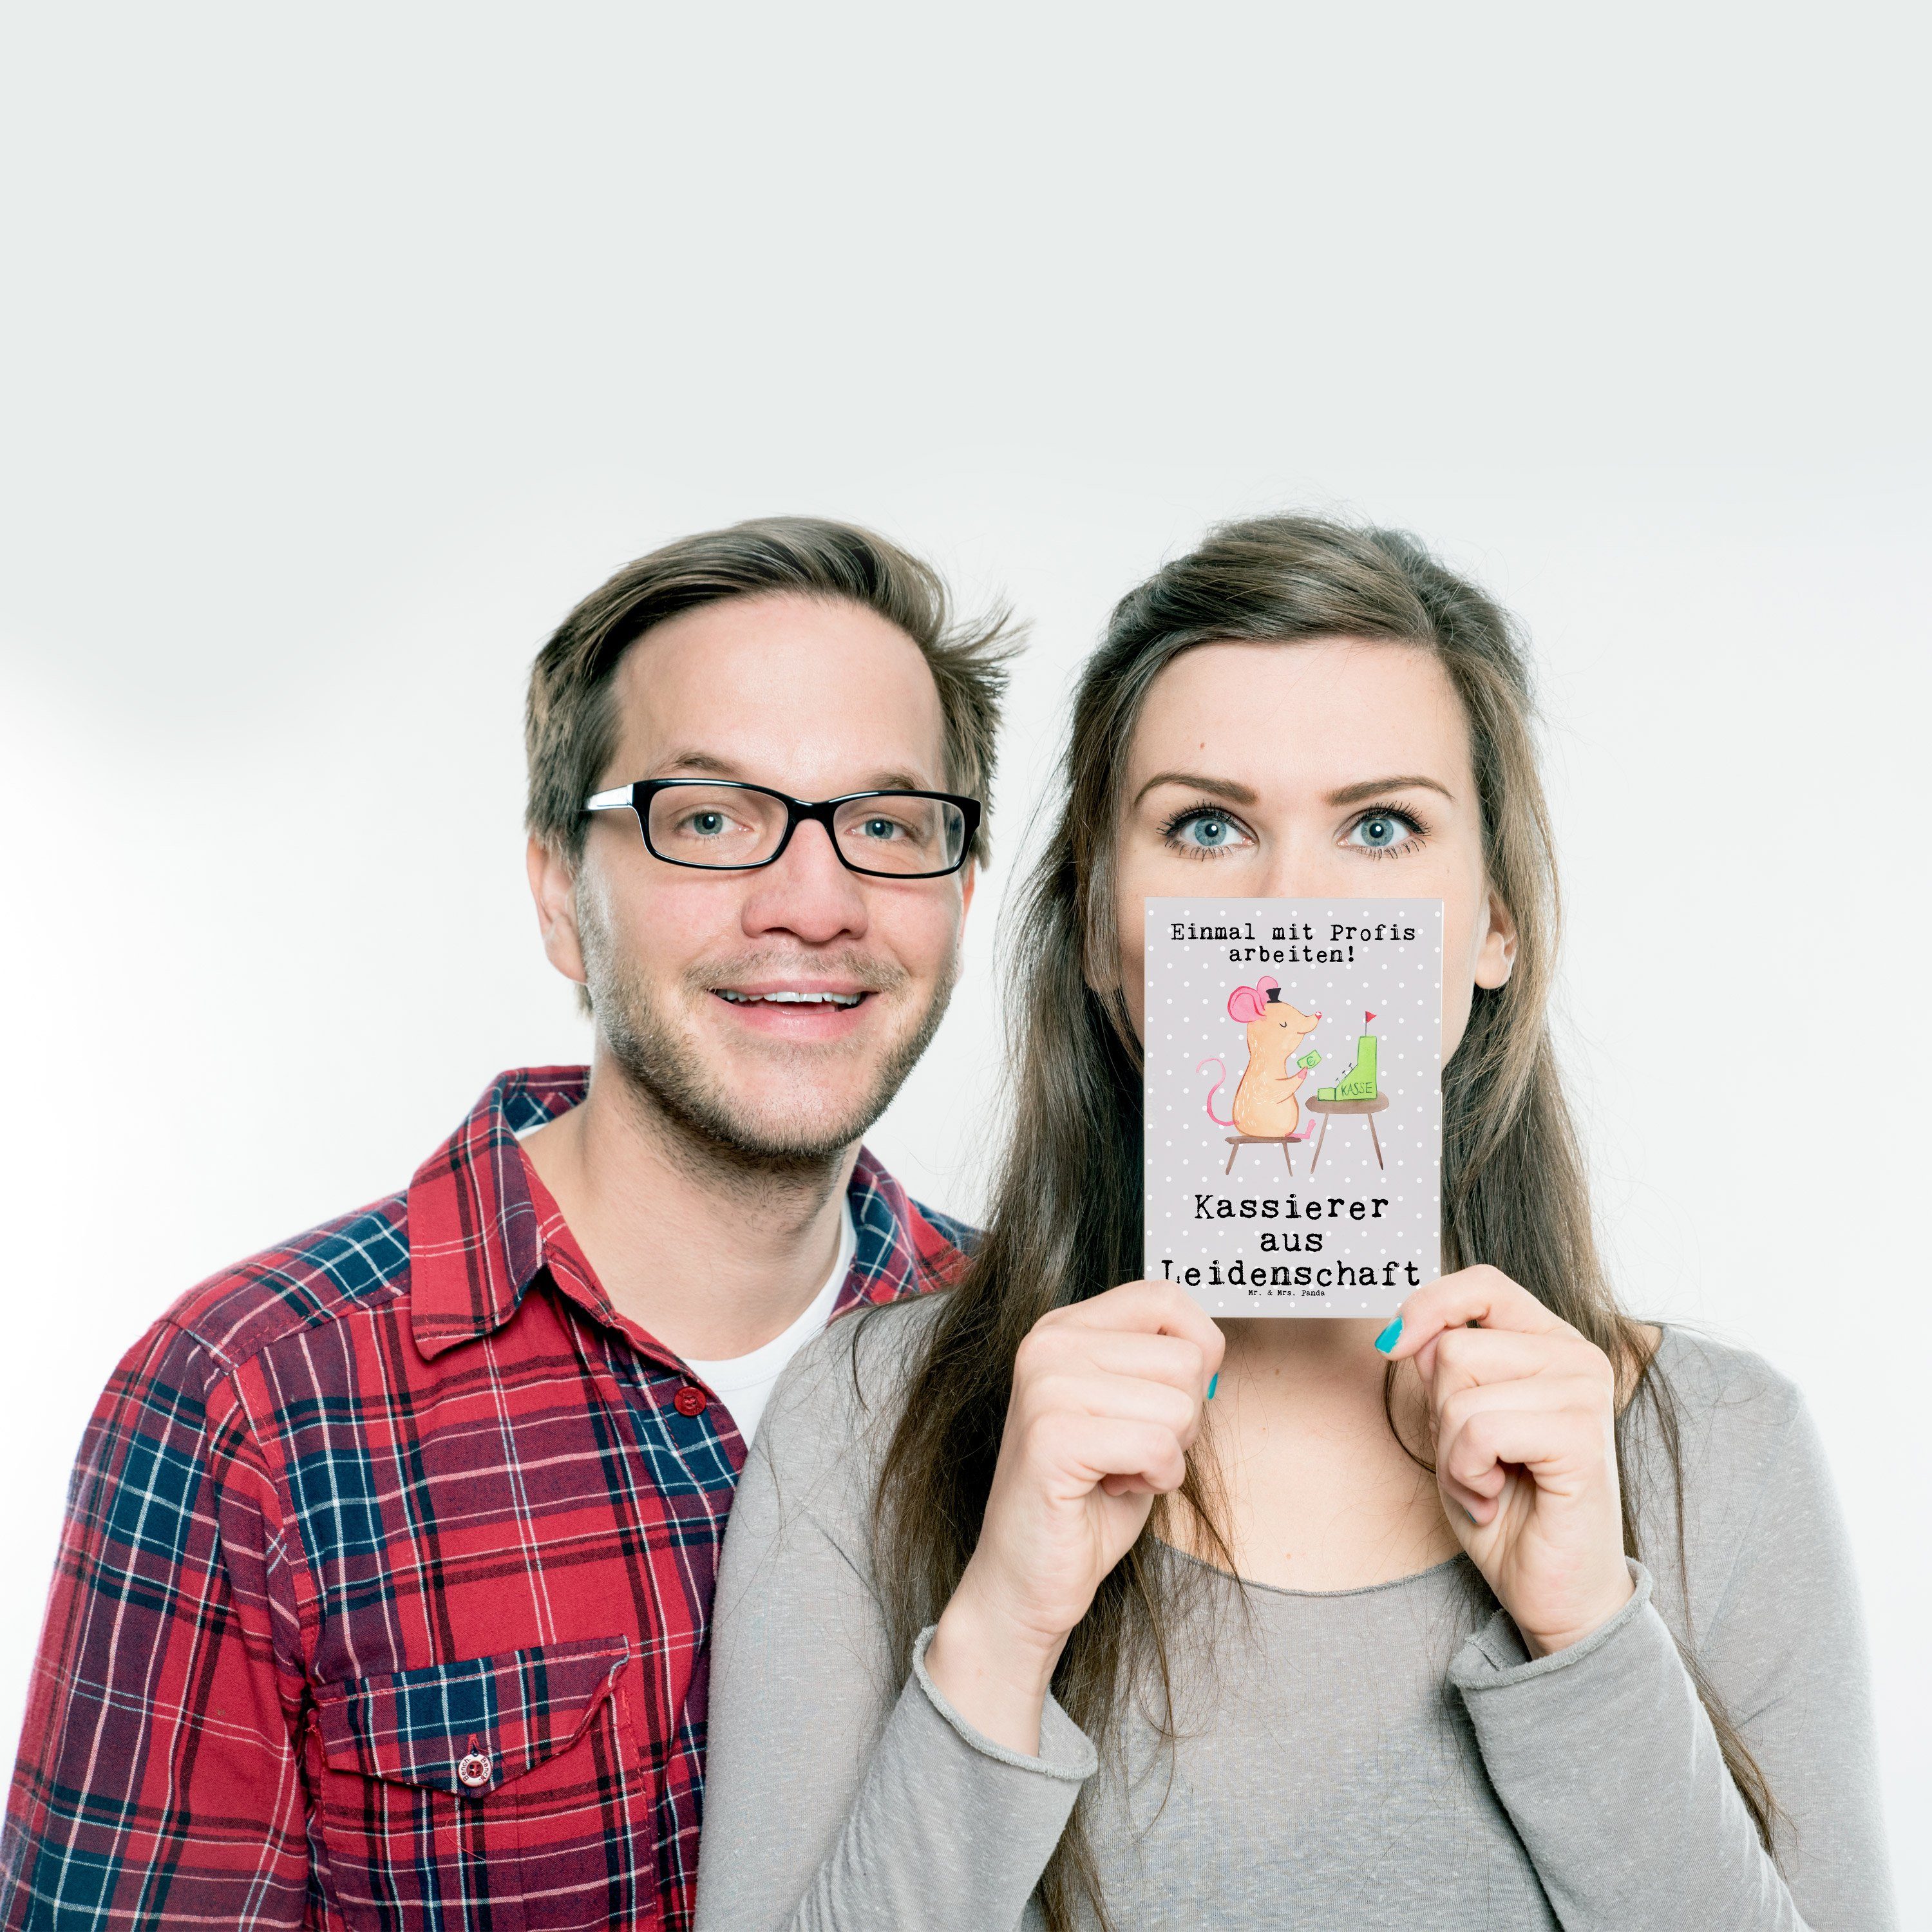 Mr. & Mrs. Panda Kass Grußkarte, - Pastell Kassierer Leidenschaft aus - Grau Postkarte Geschenk